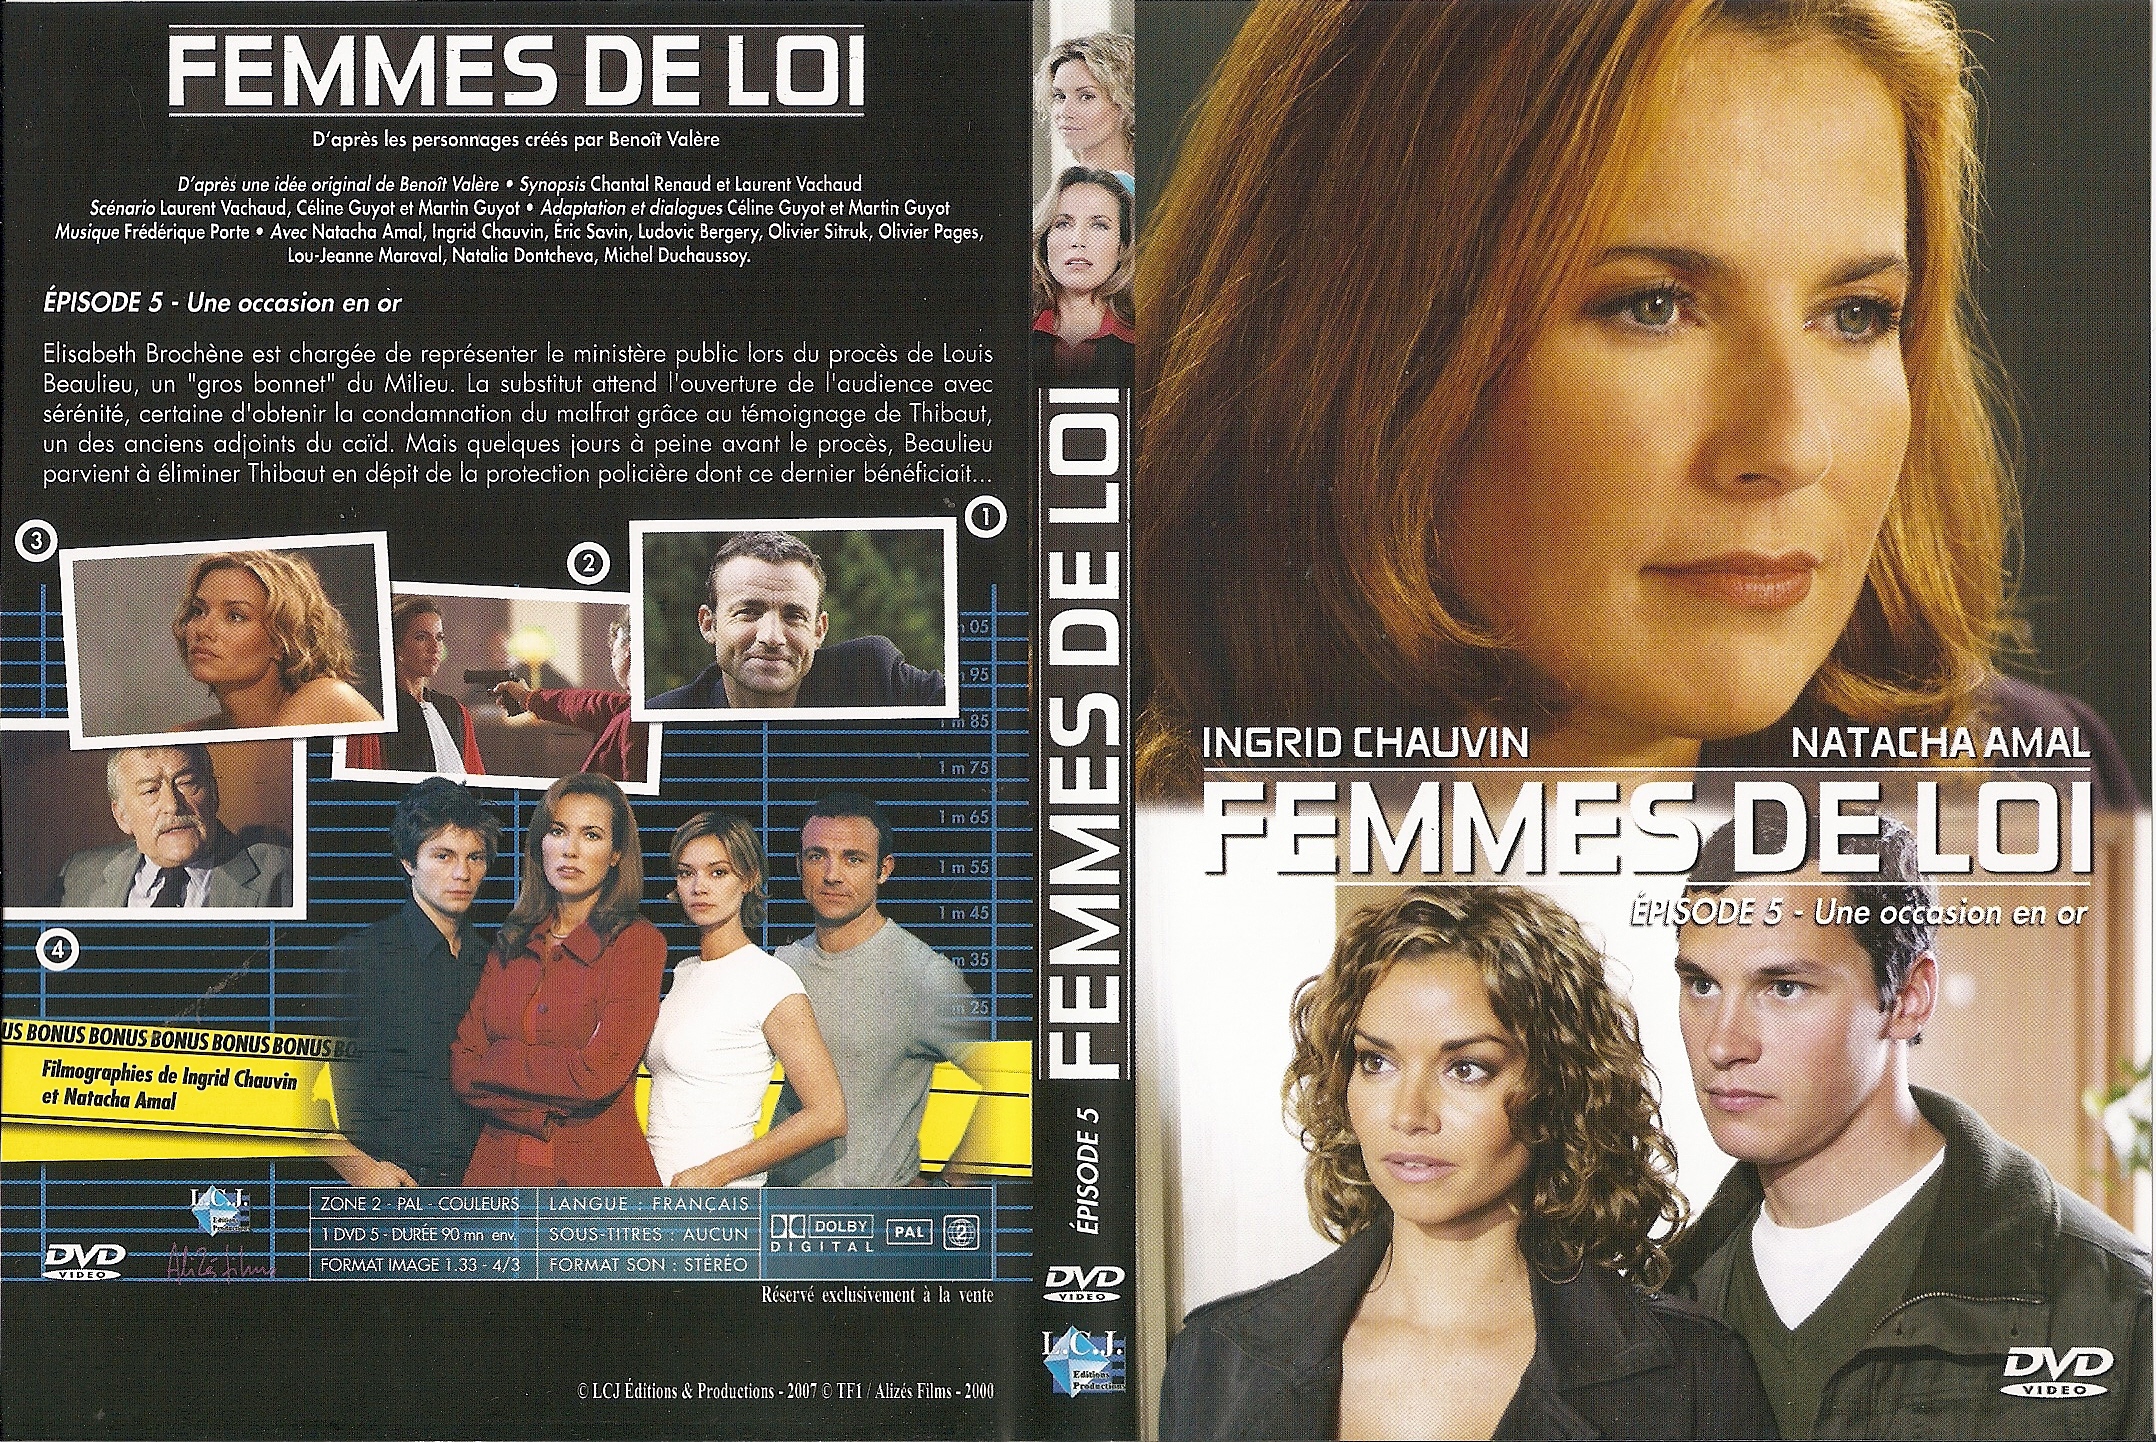 Jaquette DVD Femmes de loi  pisode 5